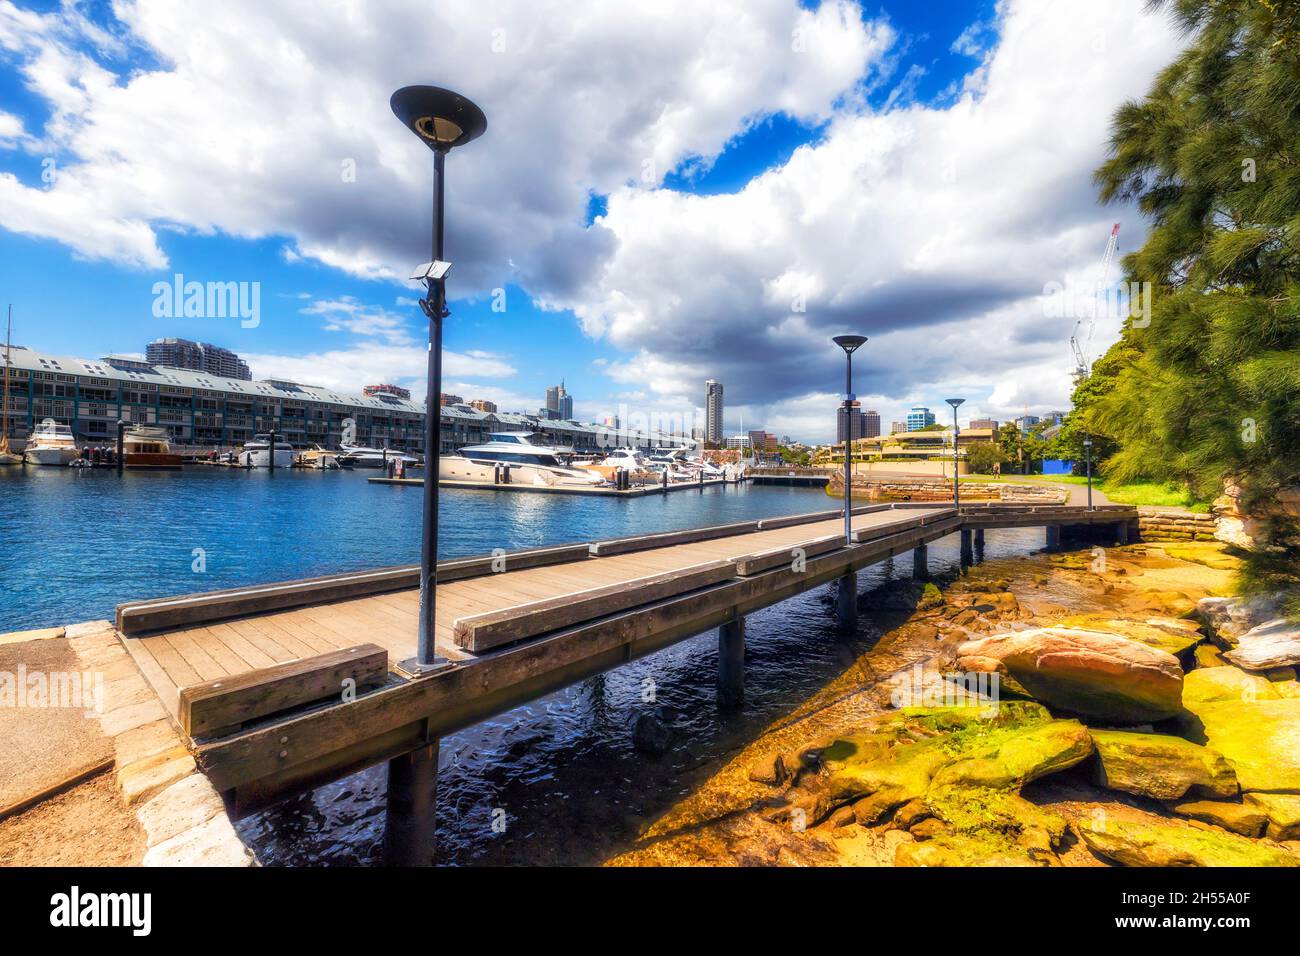 Sydney Woolloomooloo Bay Luxus Leben und Yachthafen mit teuren Yachten an einem sonnigen Tag. Stockfoto